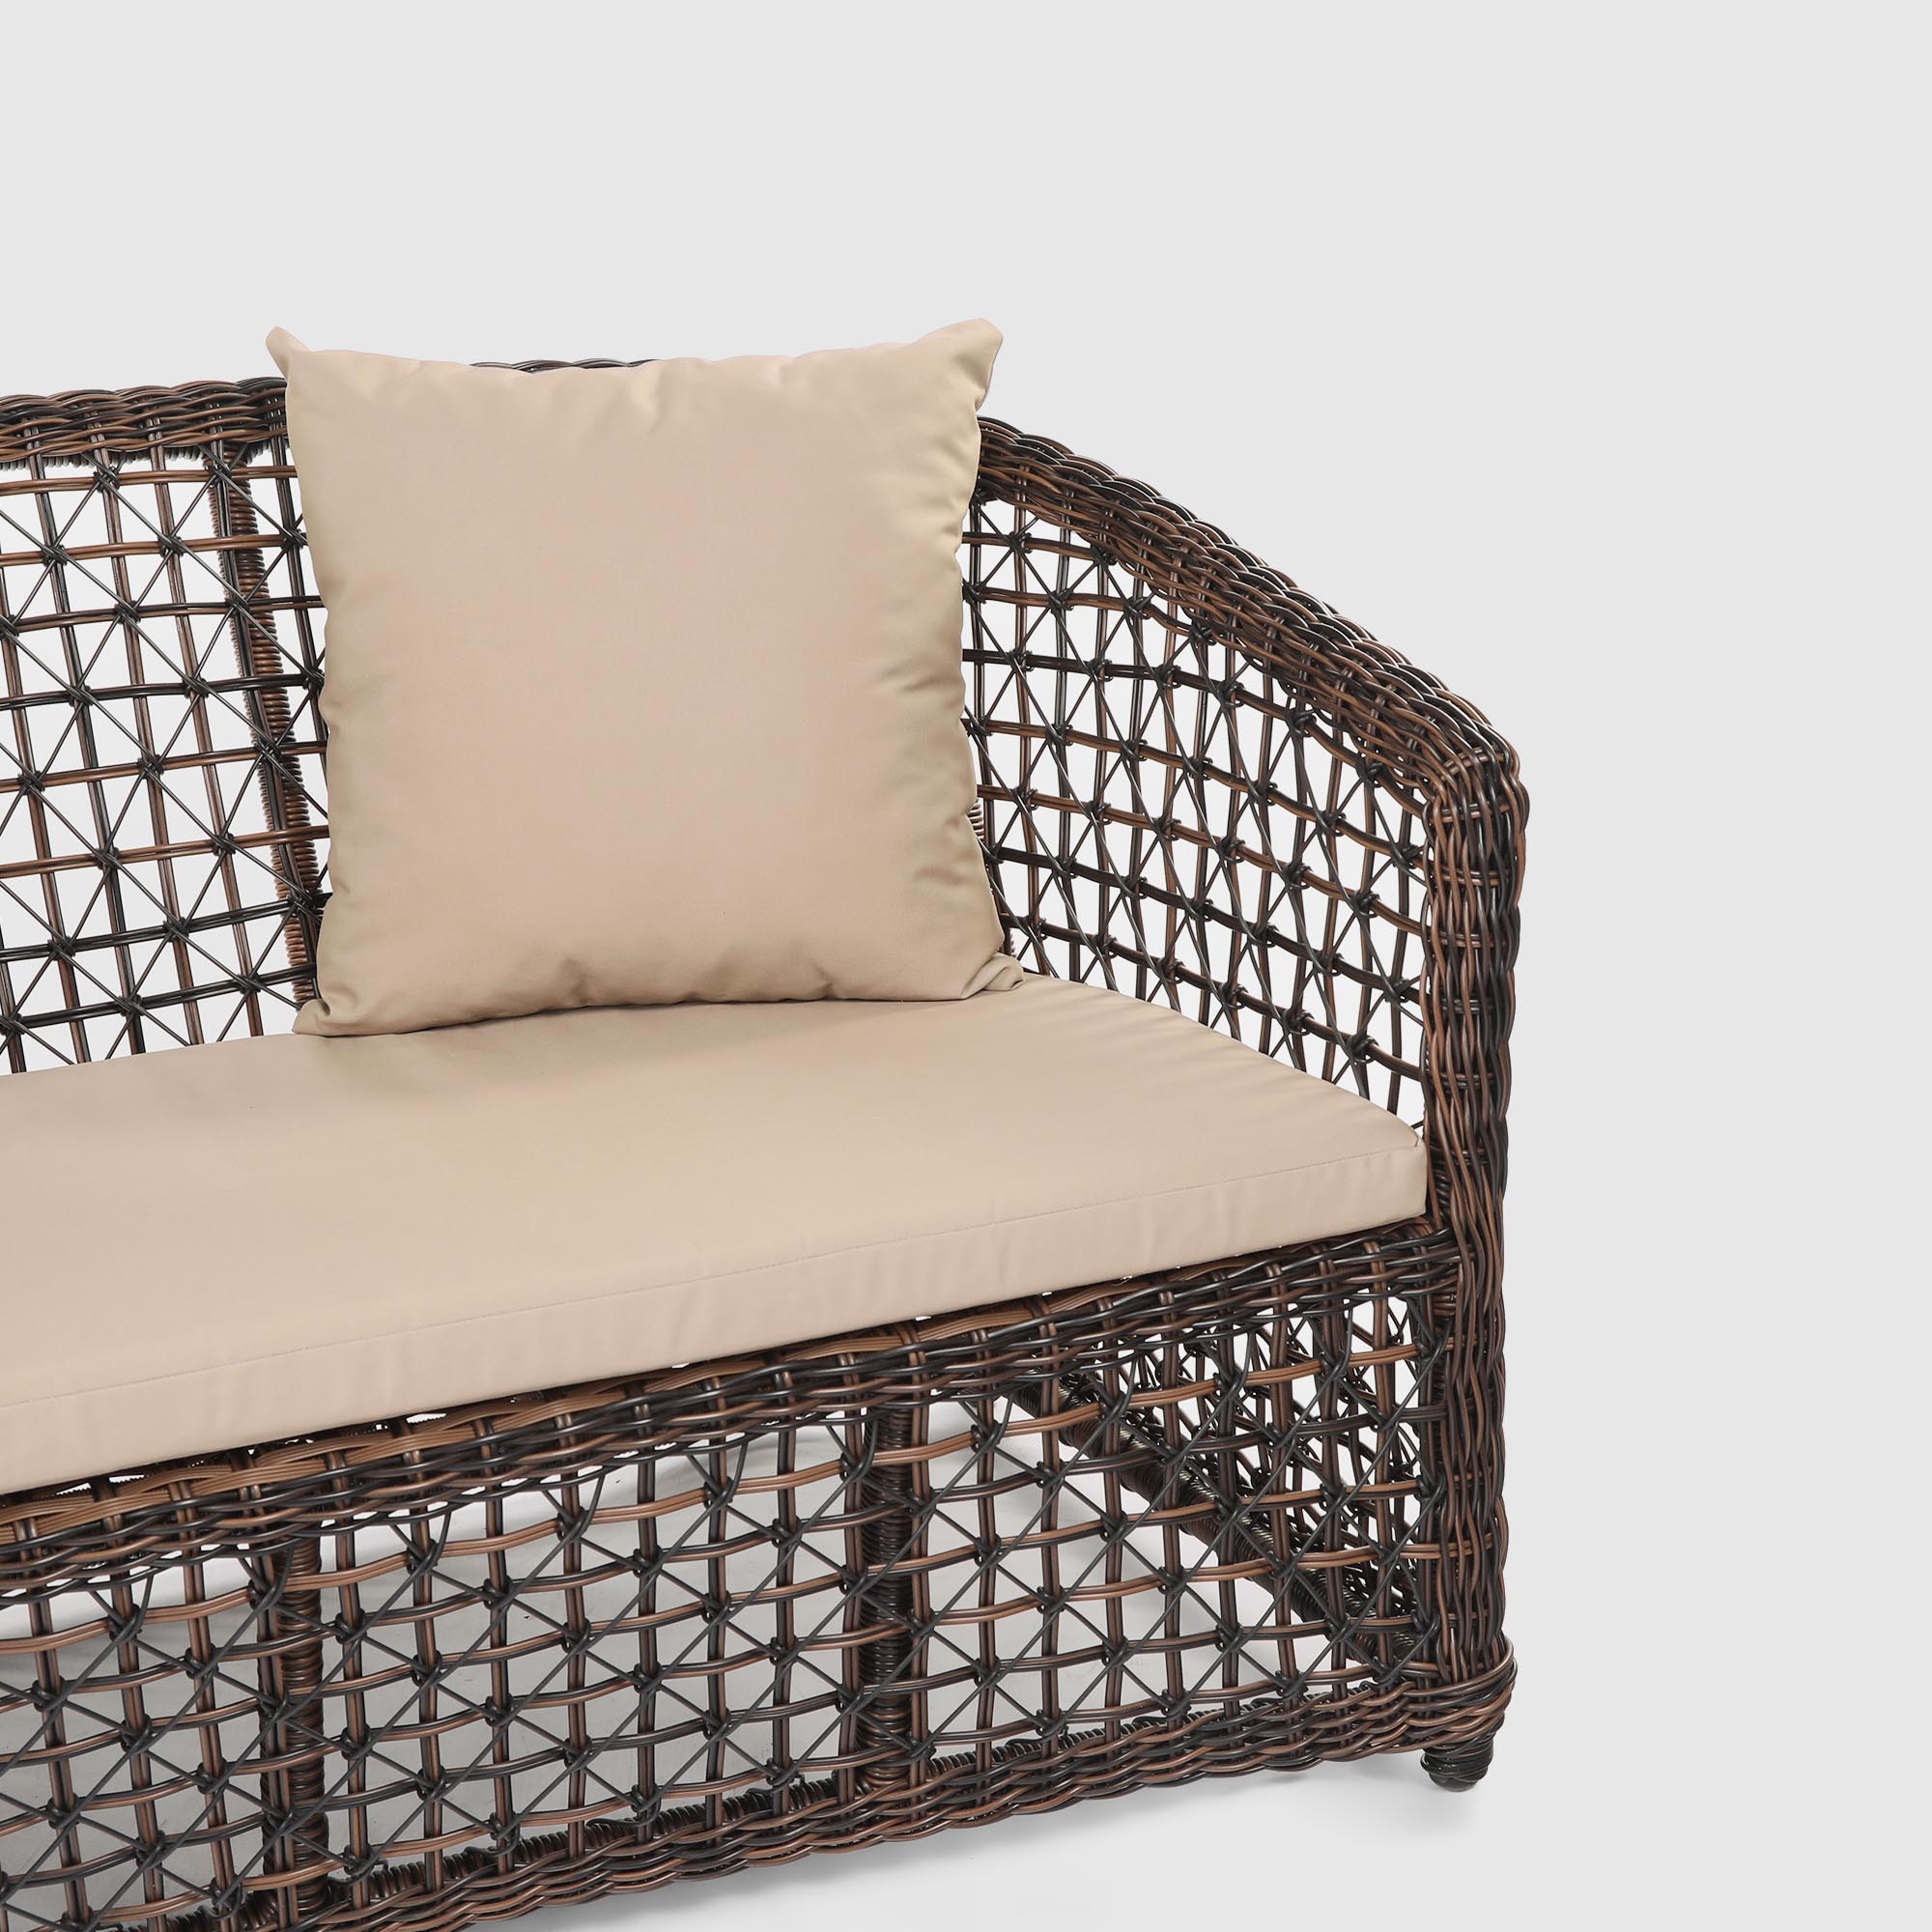 Комплект садовой мебели NS RATTAN Spider Dina 117 Sofa, цвет коричневый, размер 200х67х74 см - фото 10